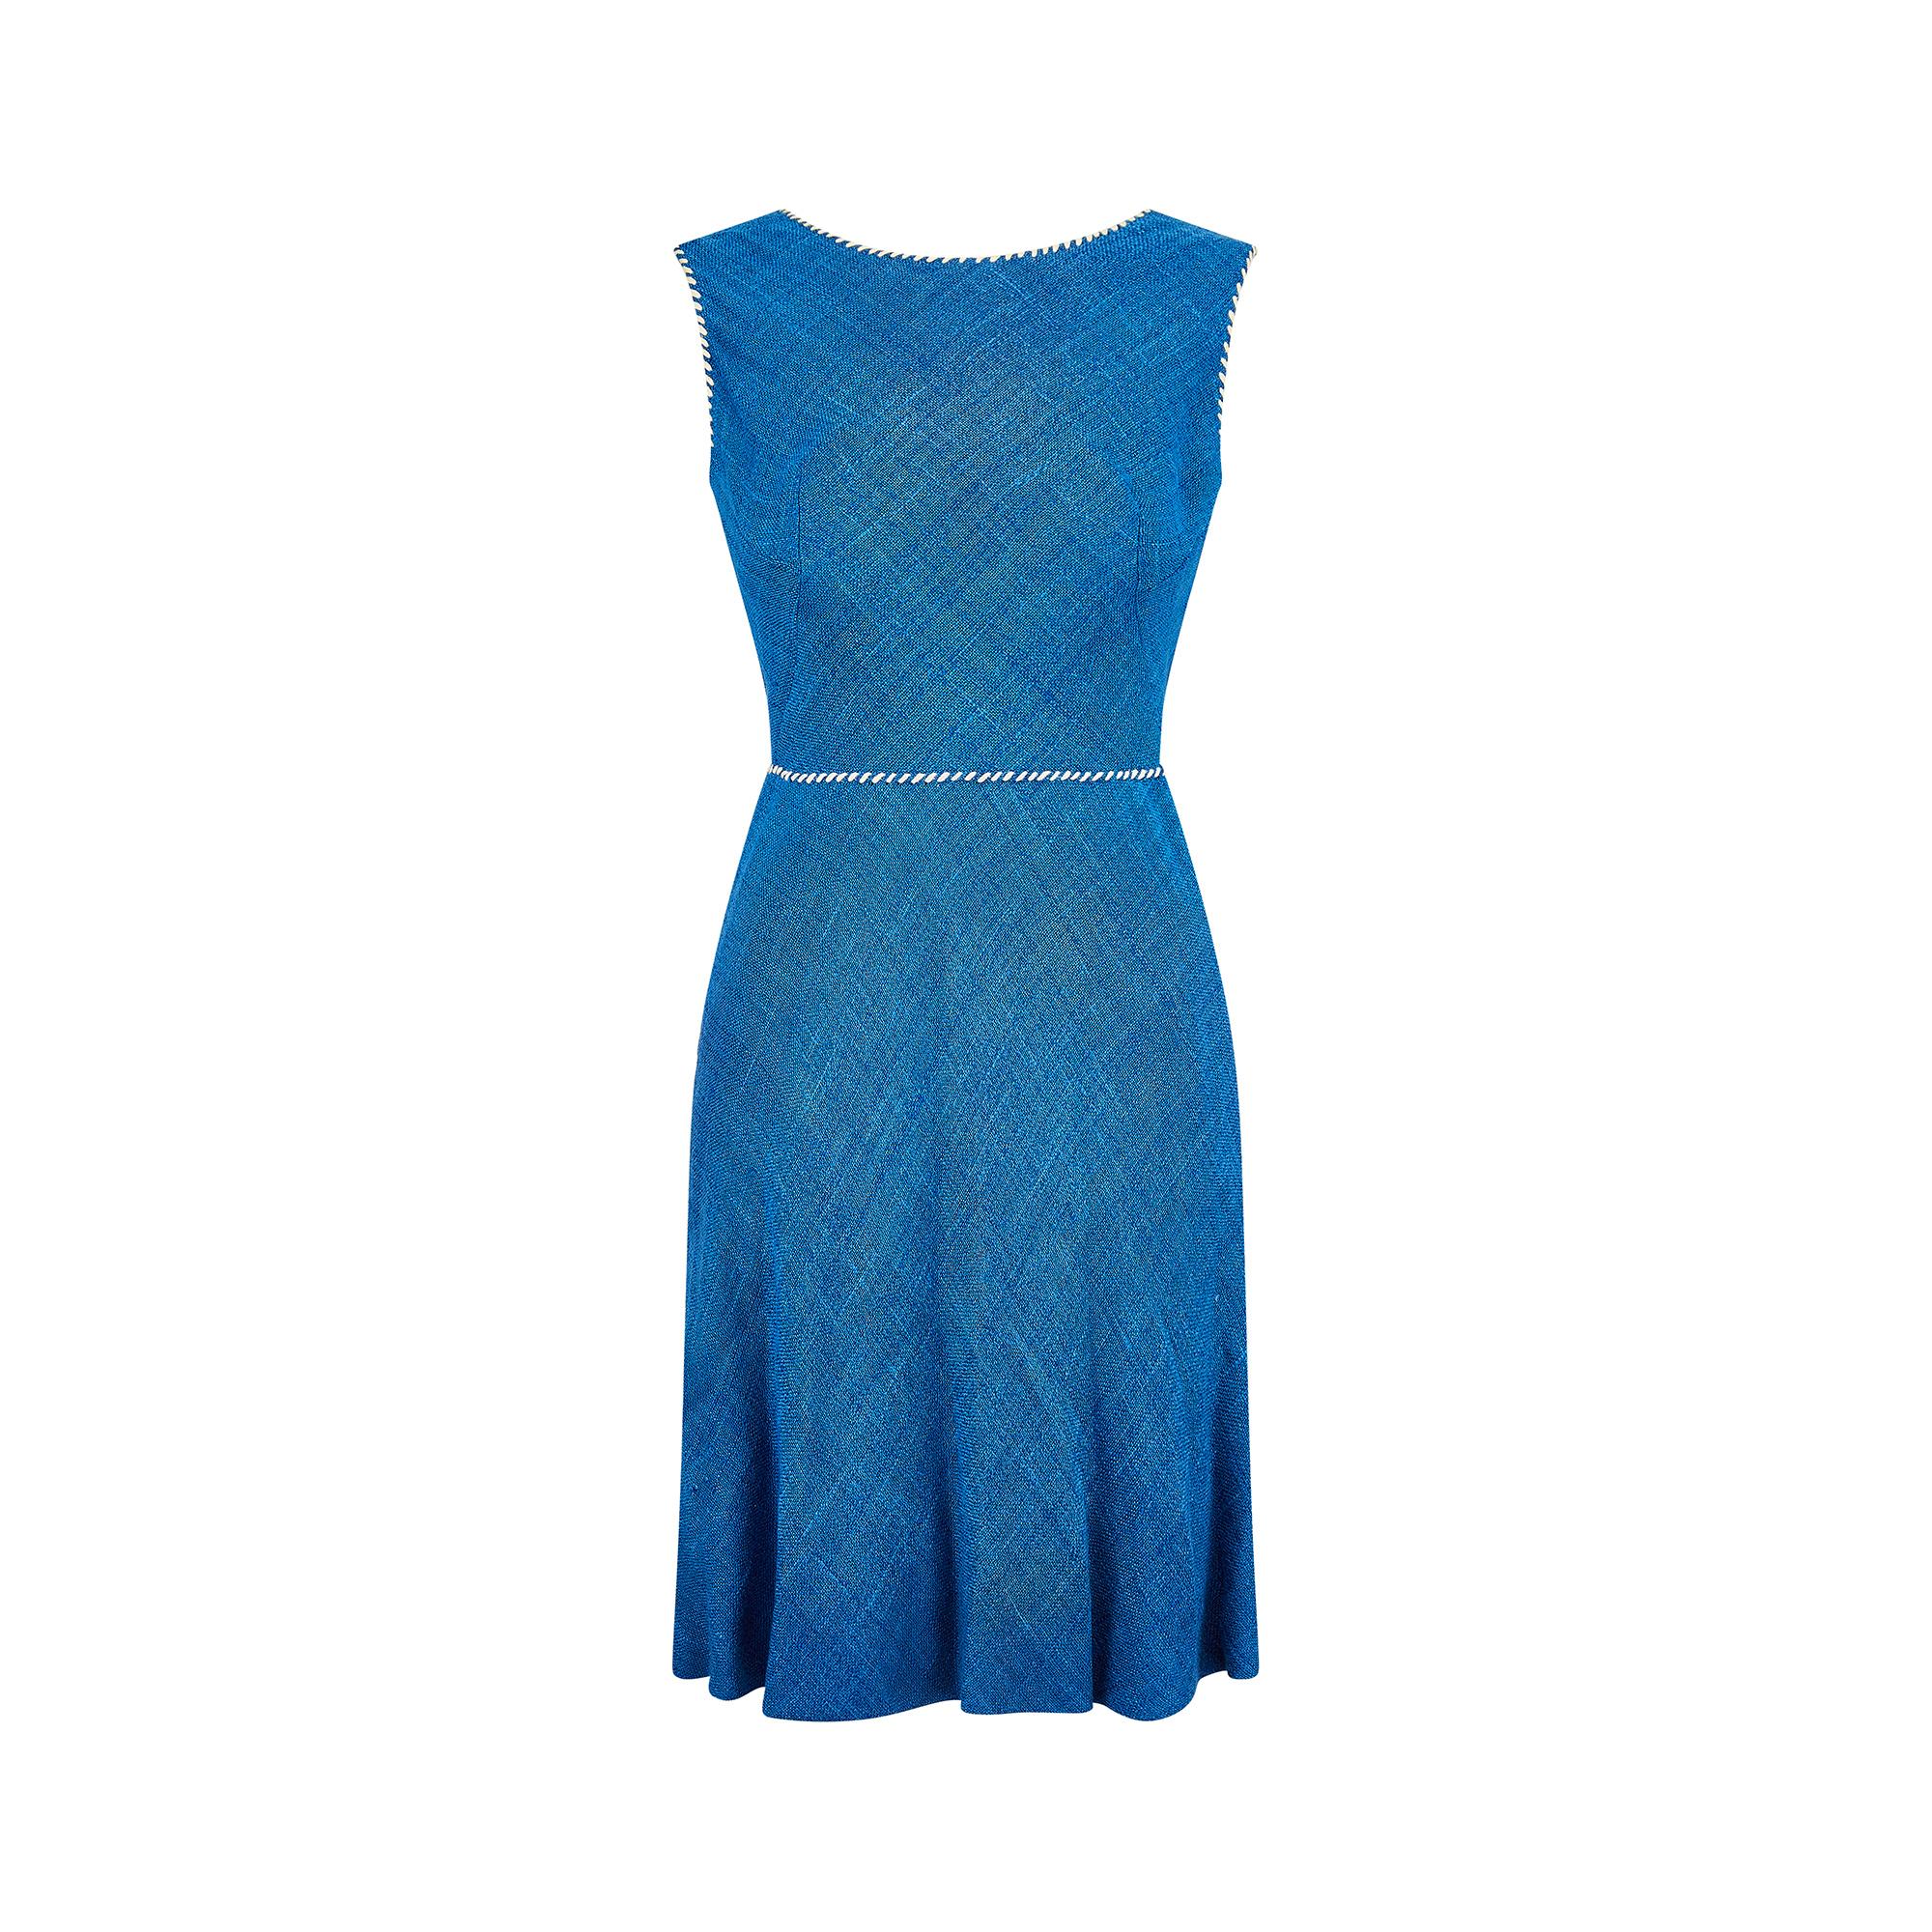 1950s Jacques Esterel Haute Couture Blue Linen Dress Suit For Sale 1